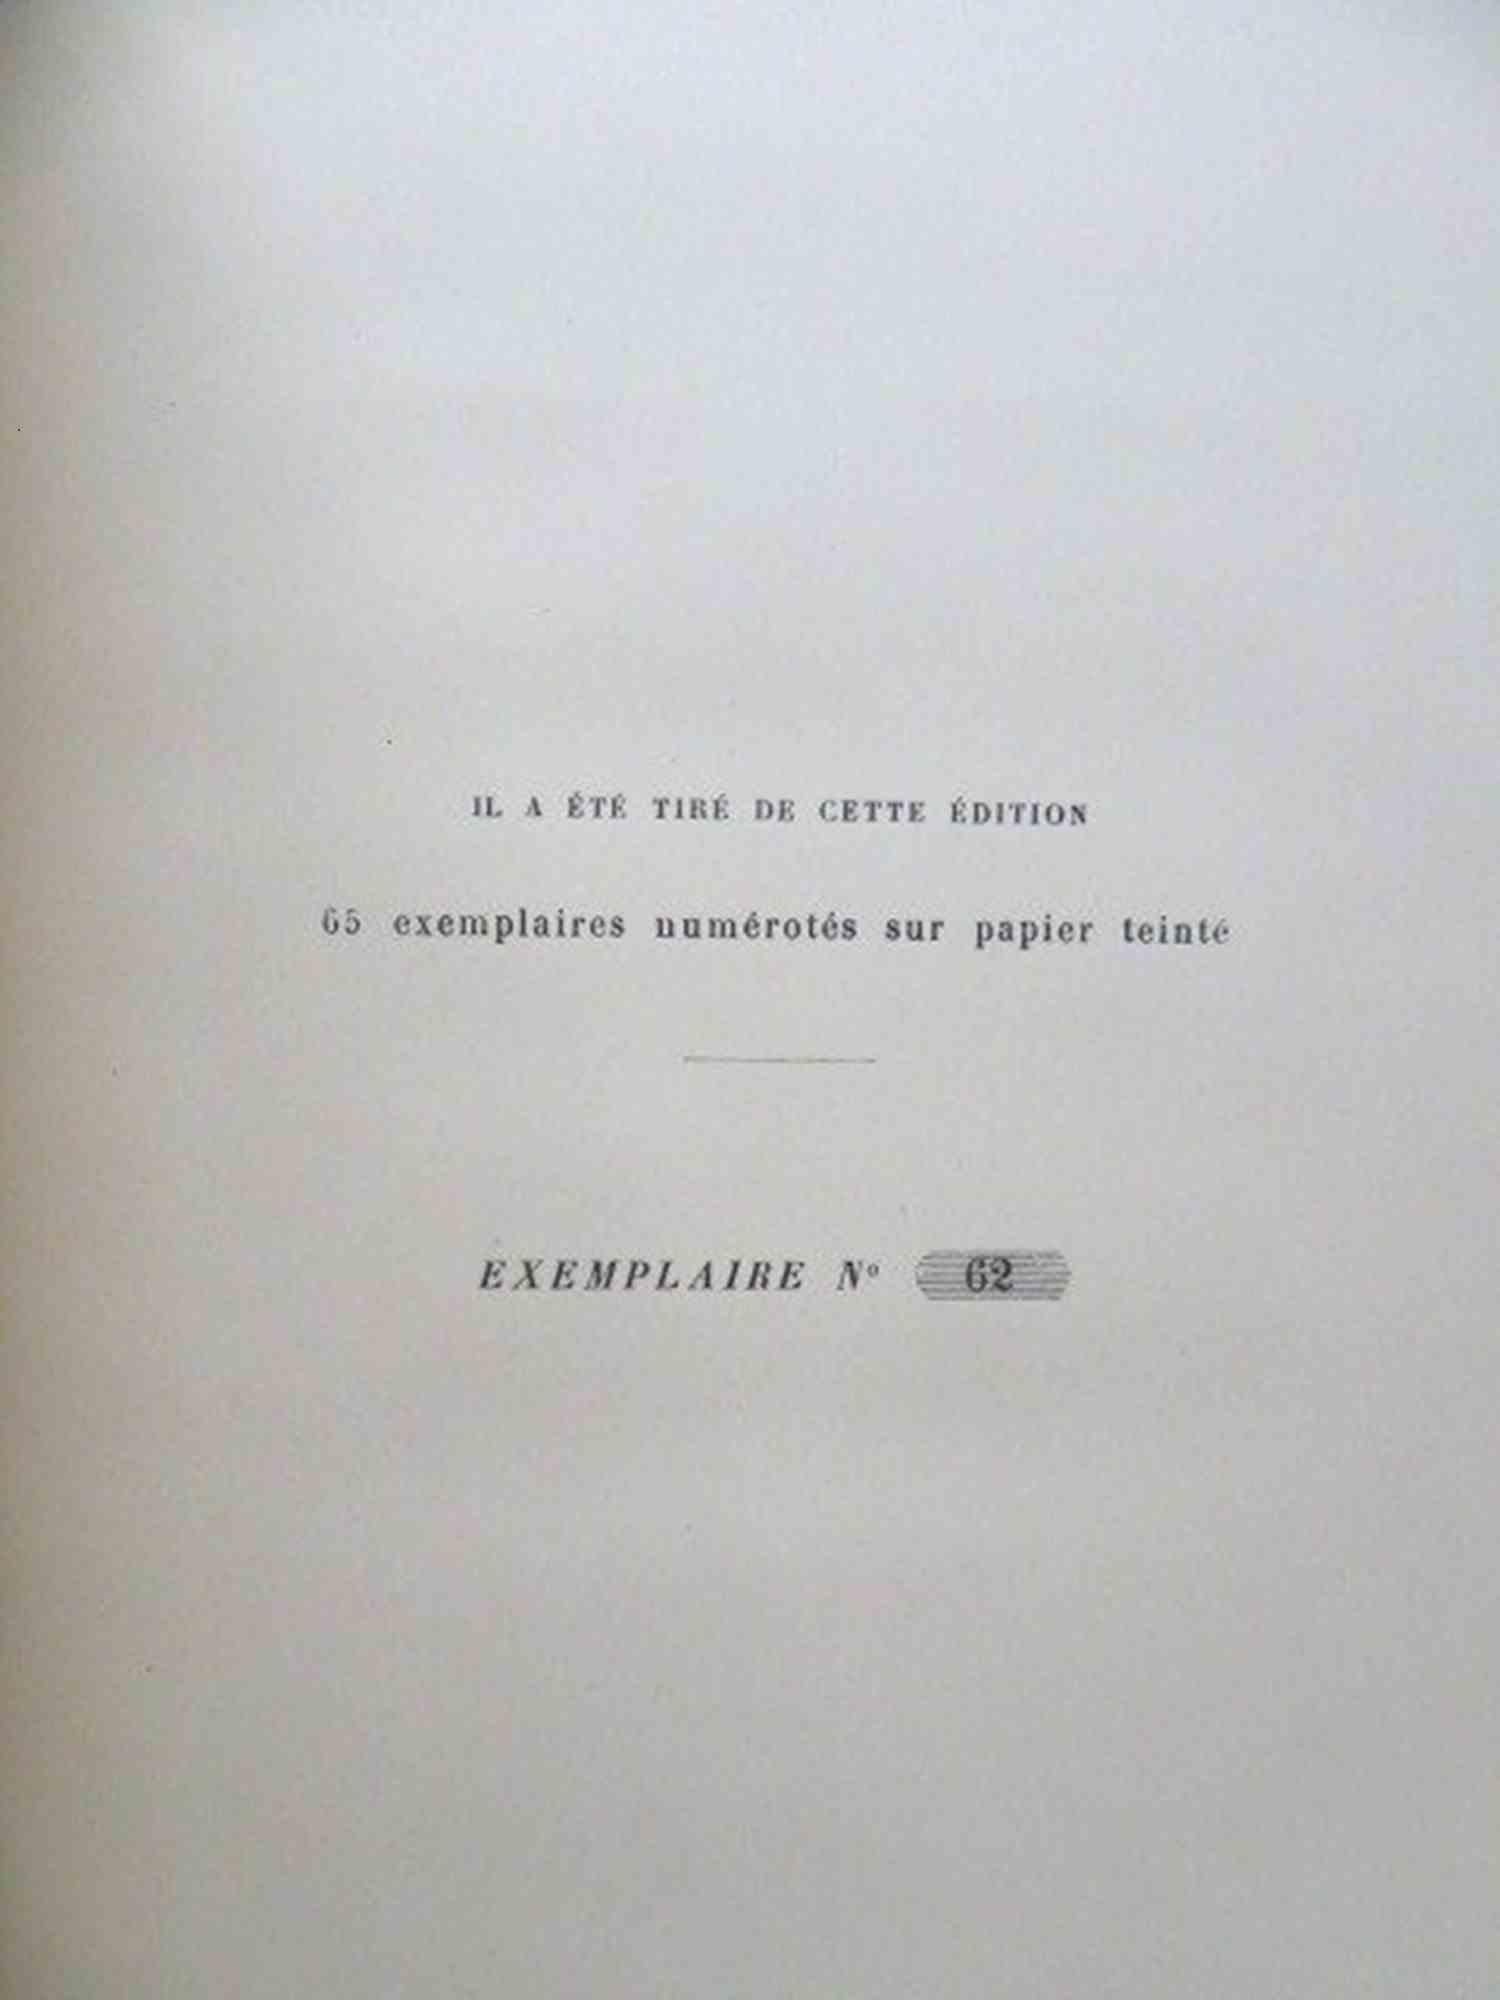 Quatrevingt - Treize - Rare Book by Victor Hugo - 1876 For Sale 5